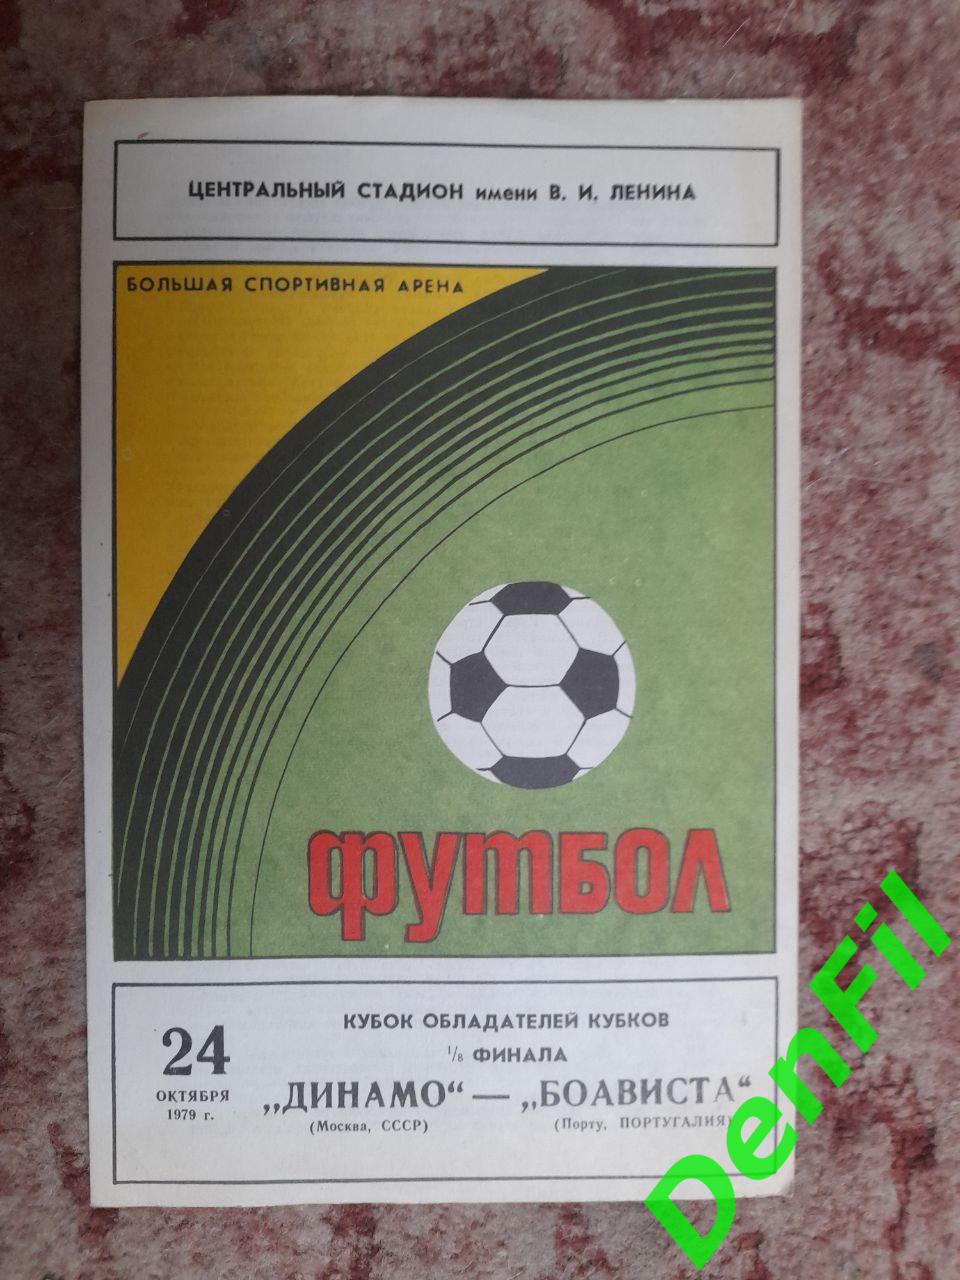 Динамо Москва - Боависта 1979